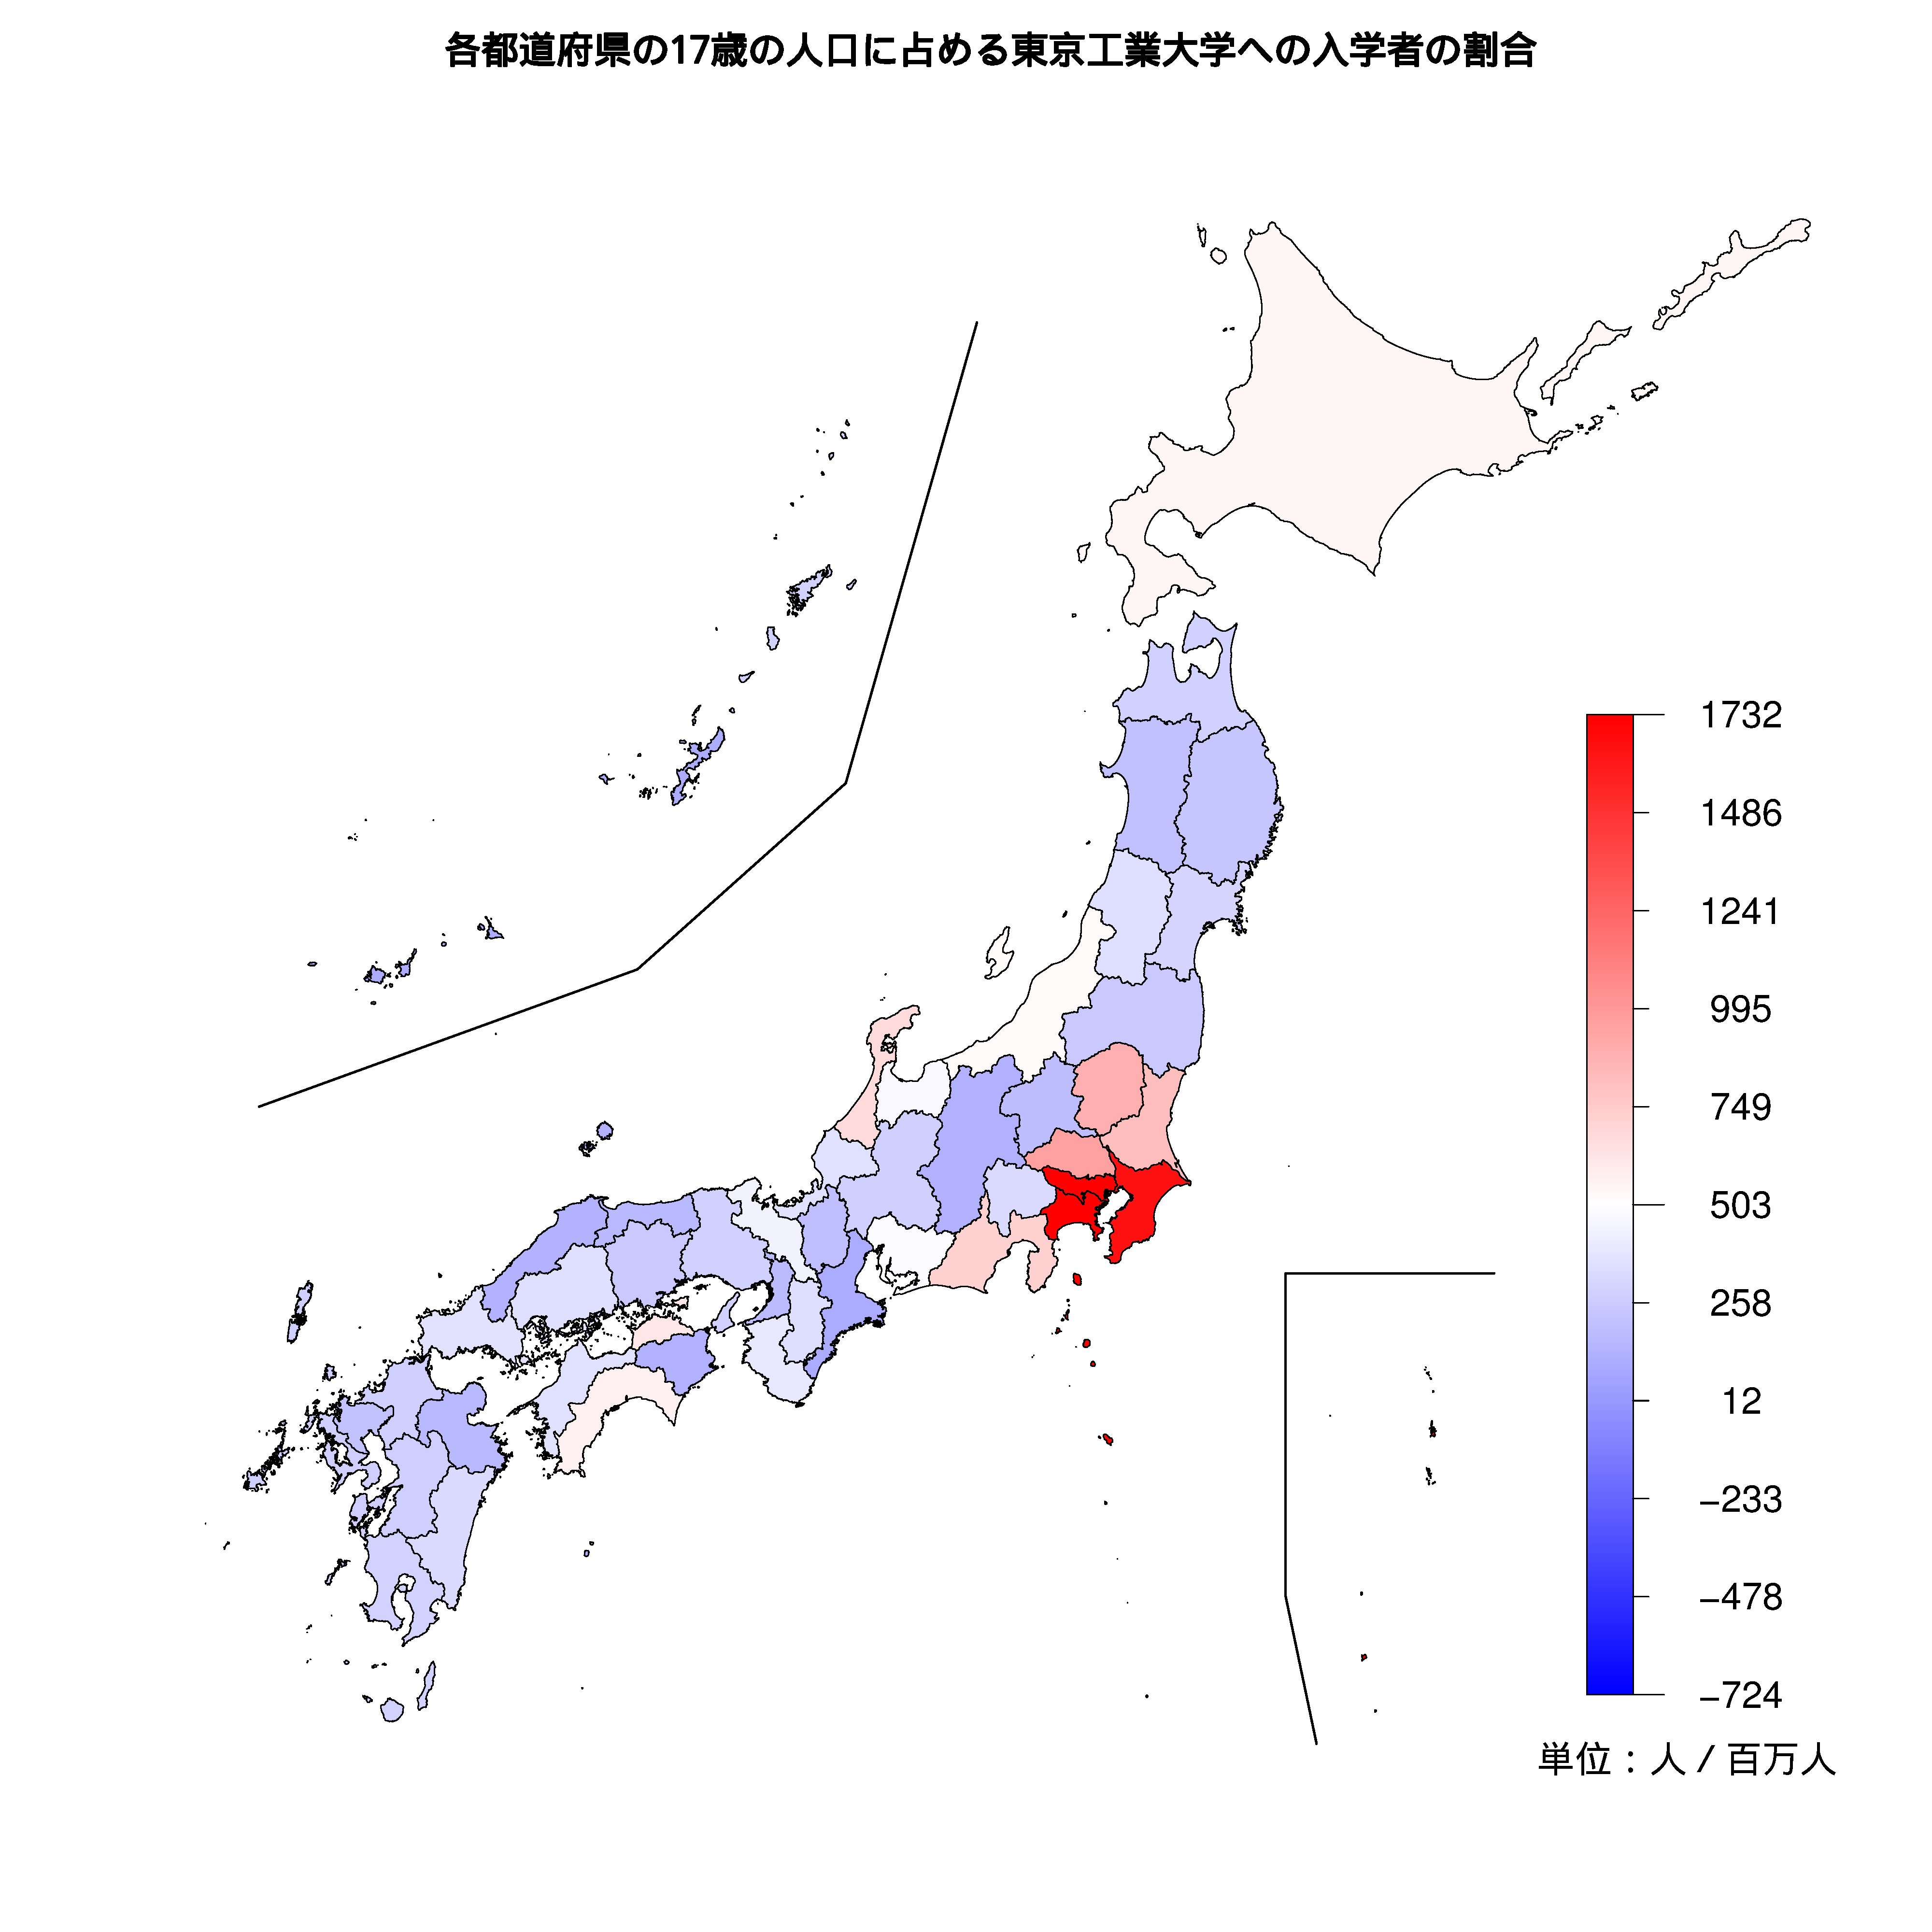 東京工業大学への入学者が多い都道府県の色分け地図